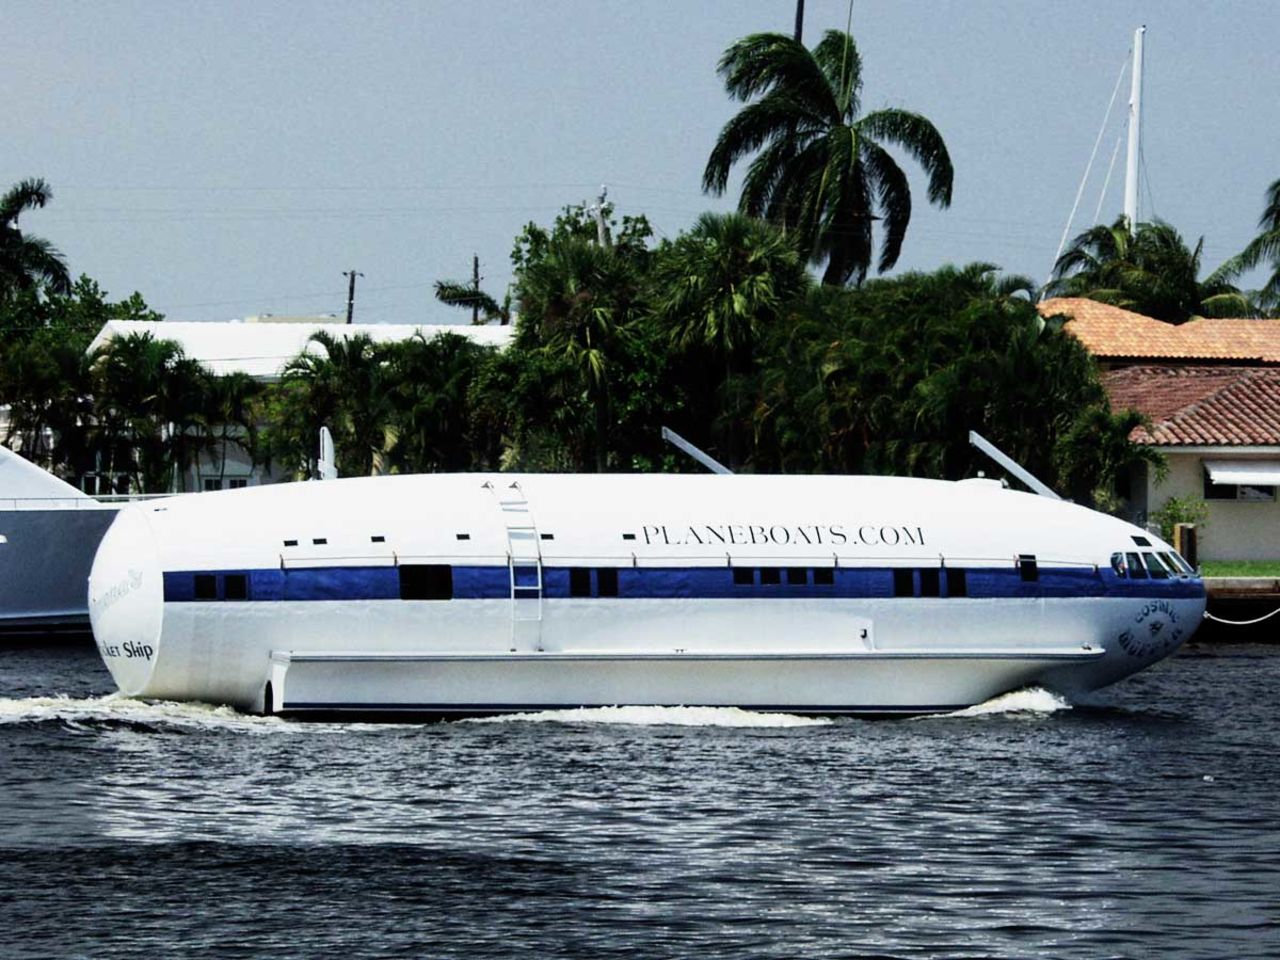 Hecho con el fuselaje de un Boeing 307 Boeing 307 Stratoliner, este barco perteneció a Howard Hughes. Después de pasar por varios dueños, evolucionó a lo que es hoy. El cantautor Jimmy Buffett lo bautizó como el "Muffin Cósmico". Su dueño actual, Dave Drimmer, lo compró como una casa-barco en 1981. Ahora se encuentra en Fort Lauderdale, Florida.